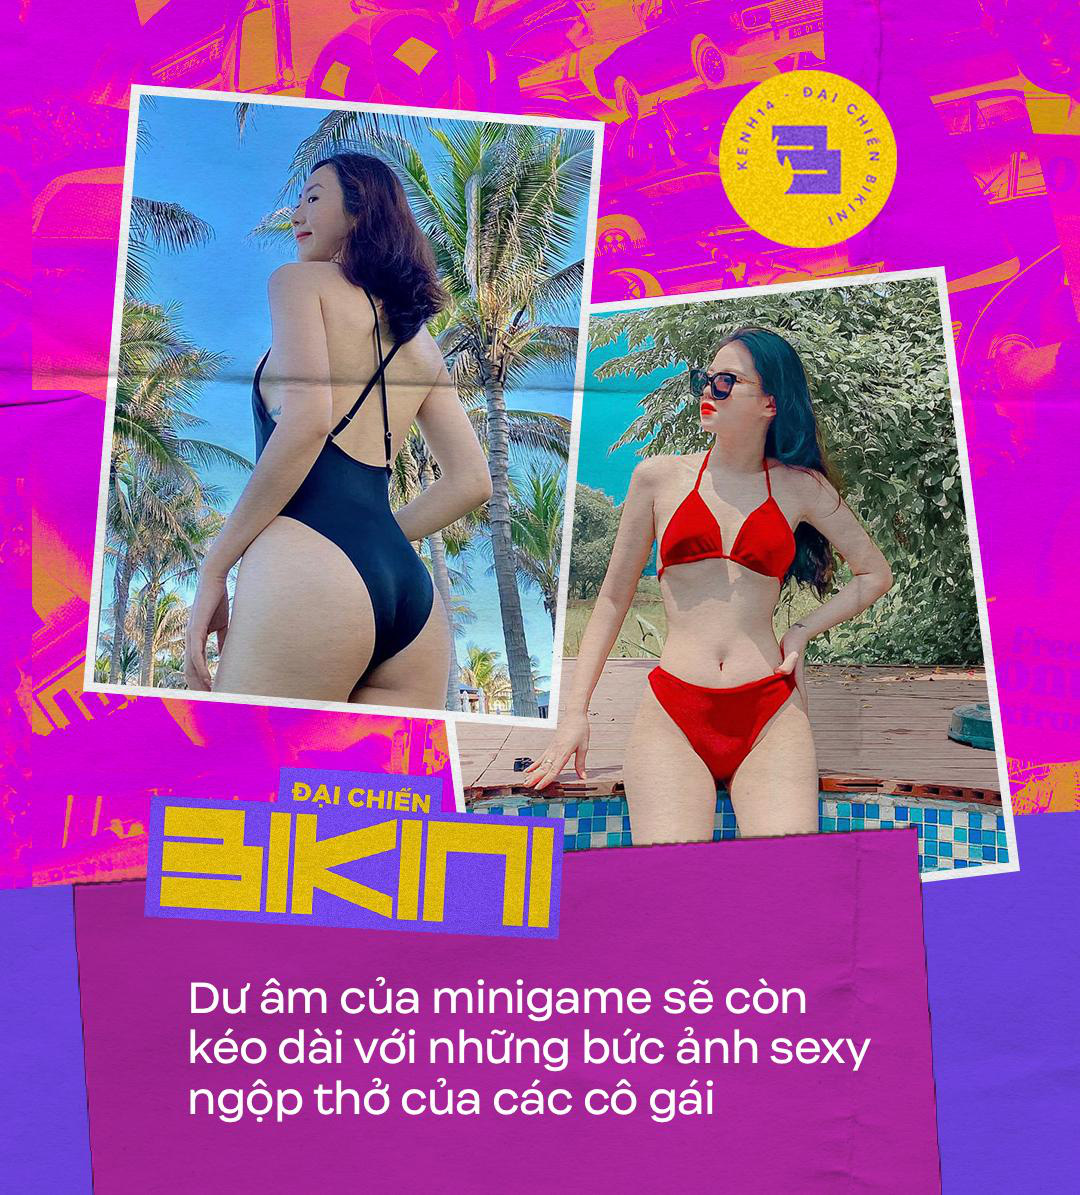 Nhìn lại minigame Đại chiến bikini: Những pha đổ bộ cực hot, các cô gái ngày càng yêu bản thân! - Ảnh 1.